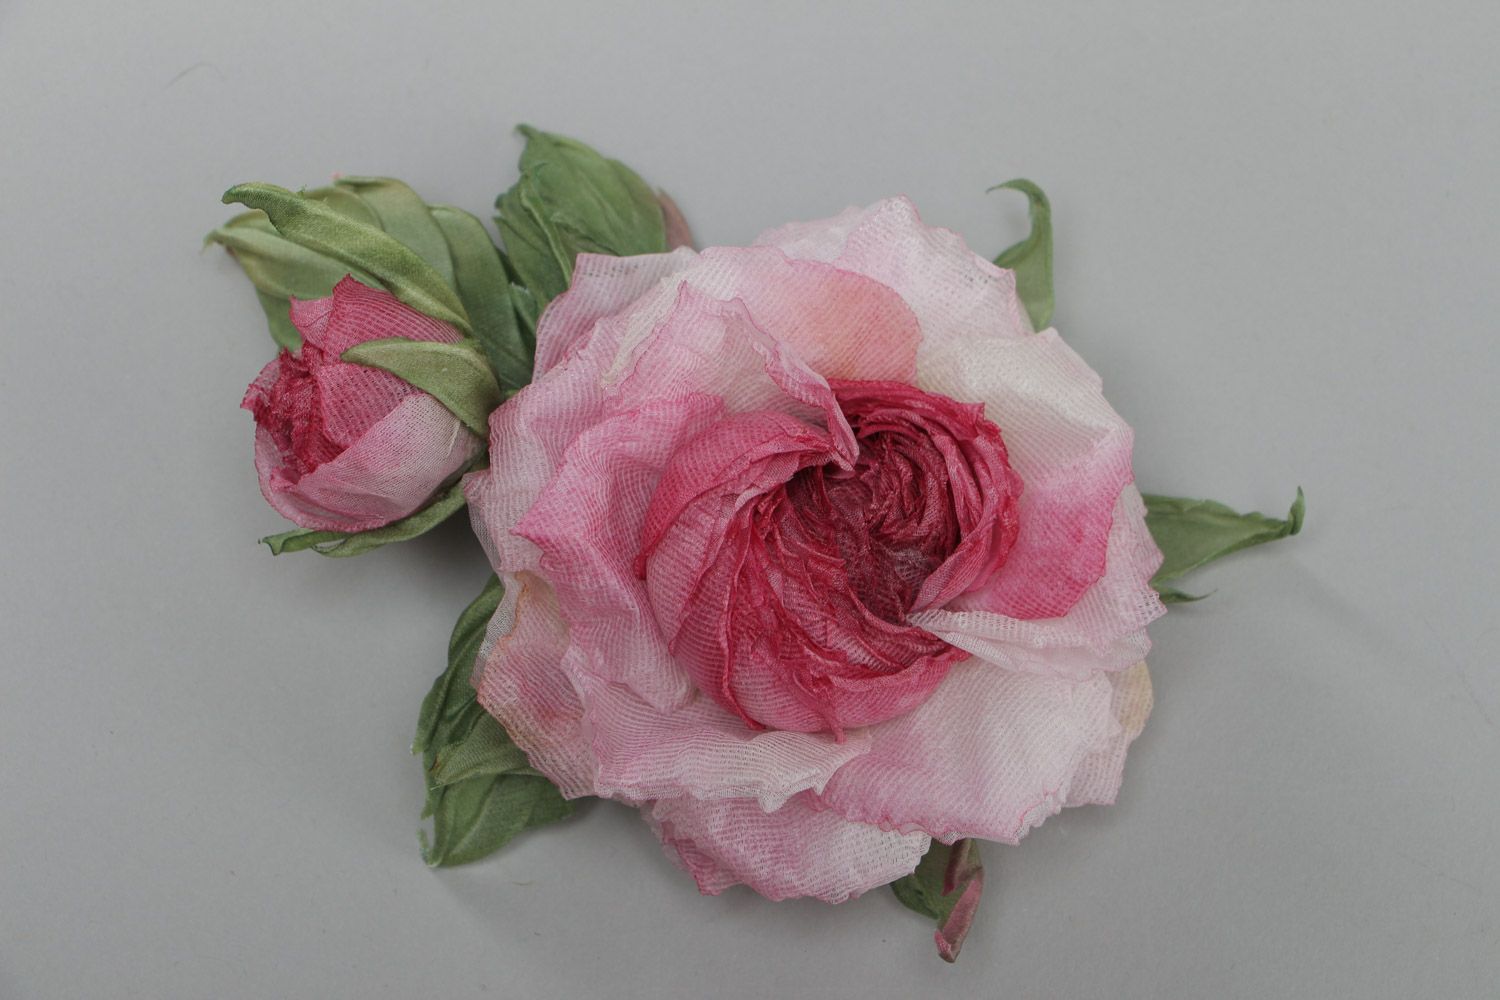 Massive exklusive Rose Brosche aus Stoff für elegante Looks und schicke Damen foto 2